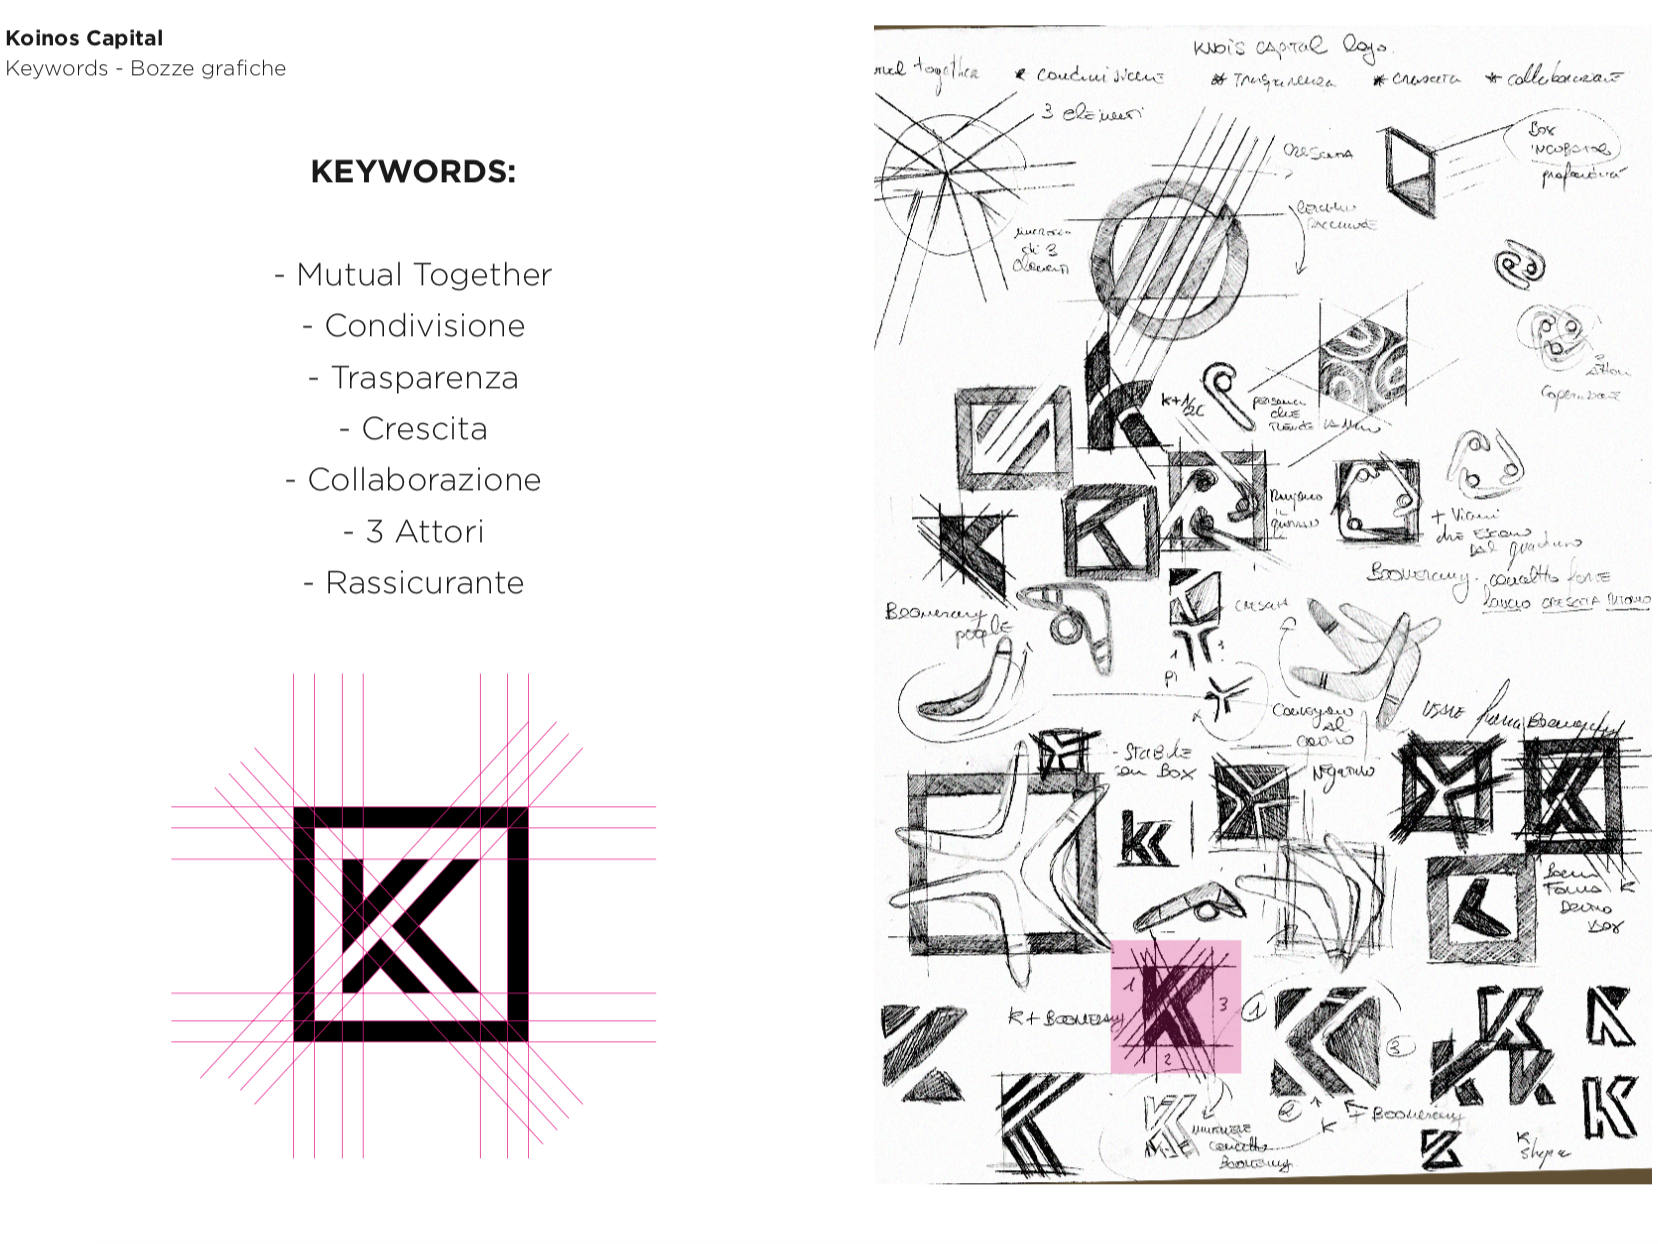 logo design sketch process